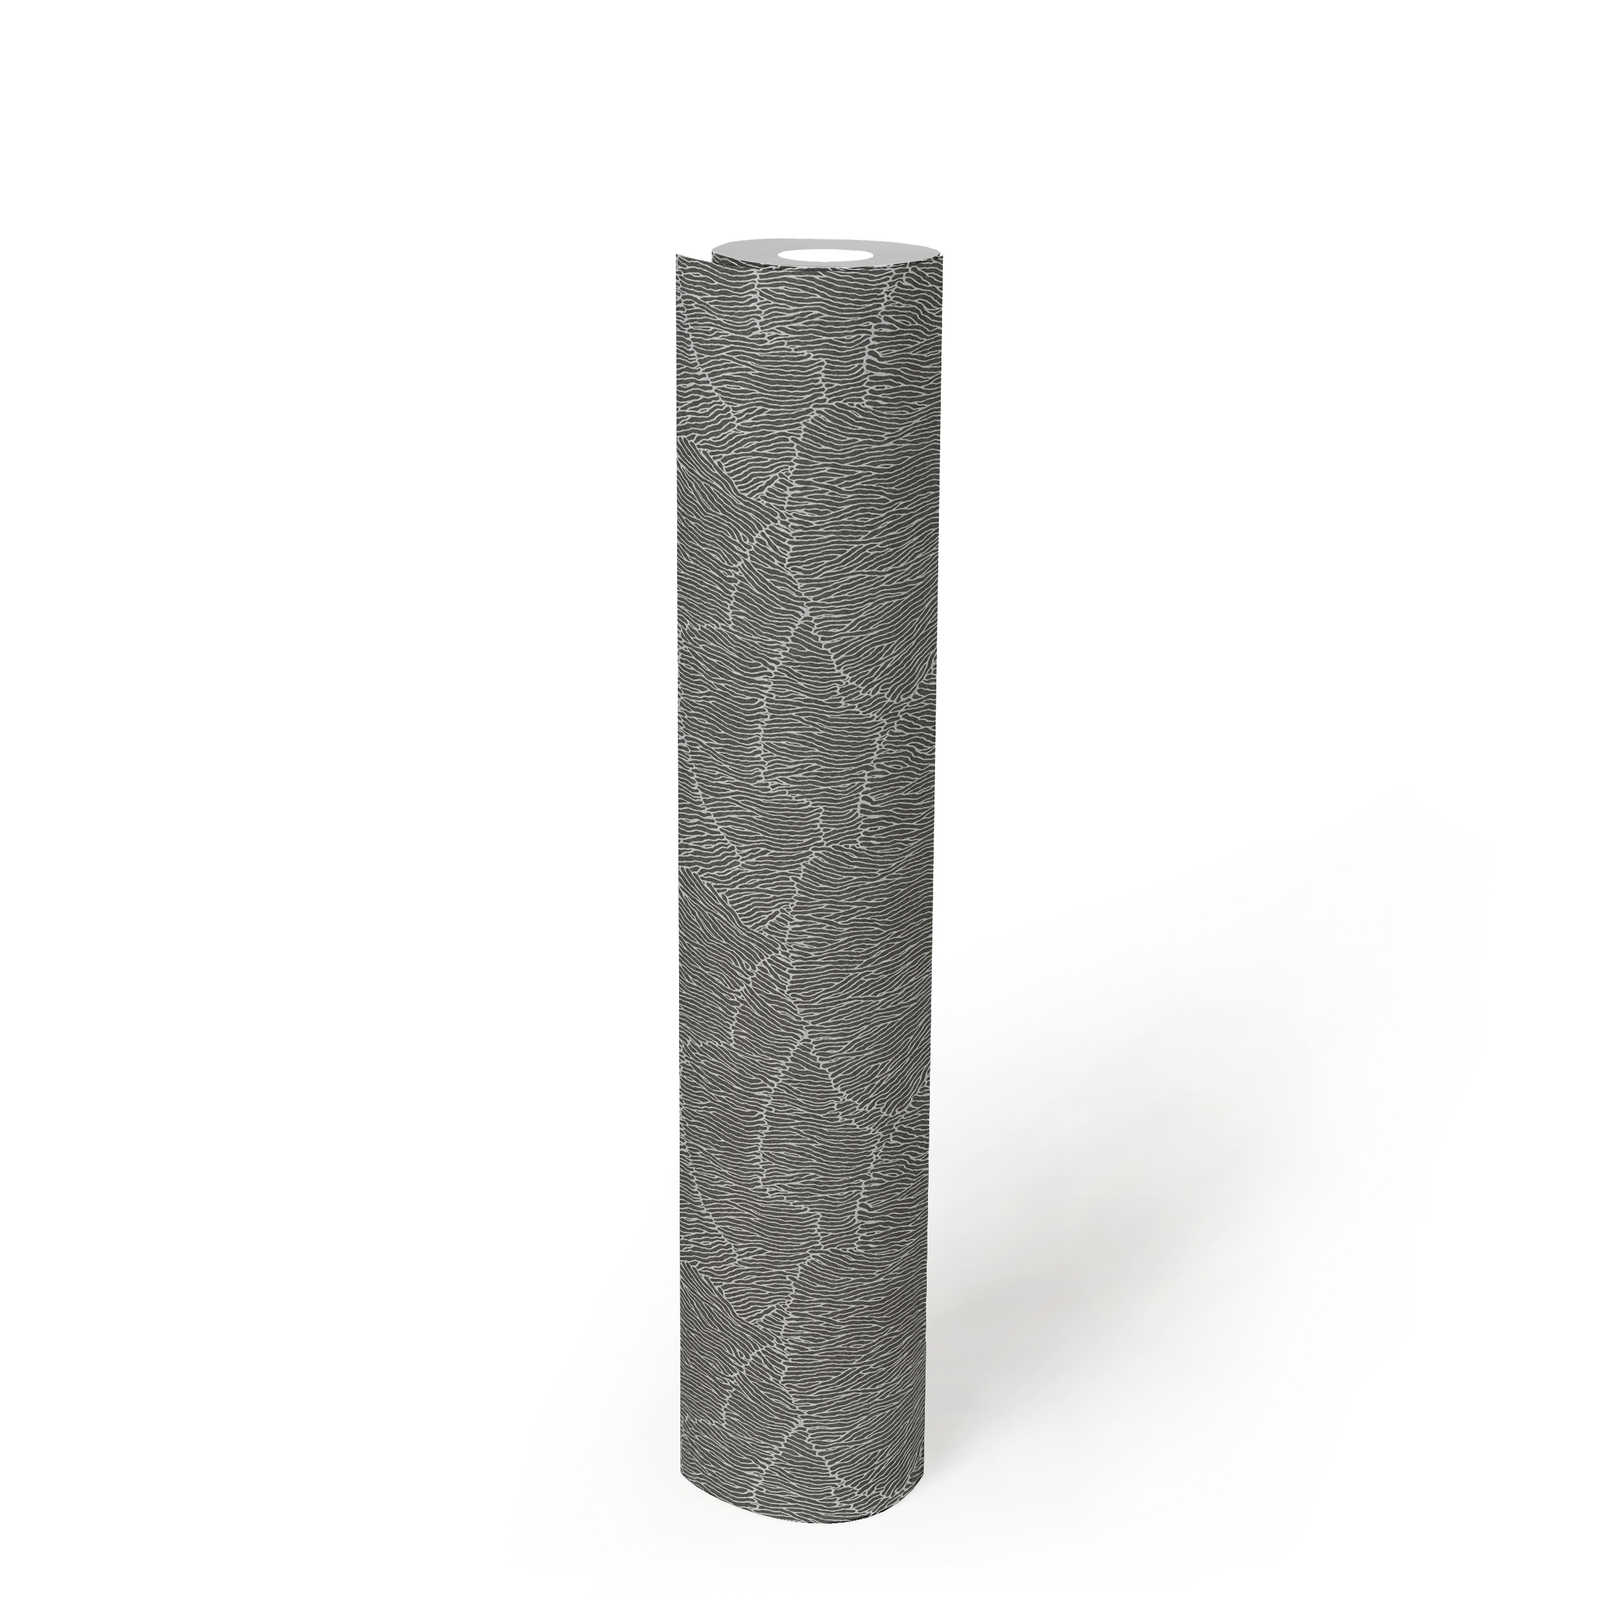             Abstrakte Tapete Mit Linienmuster – Silber, Schwarz, Metallic
        